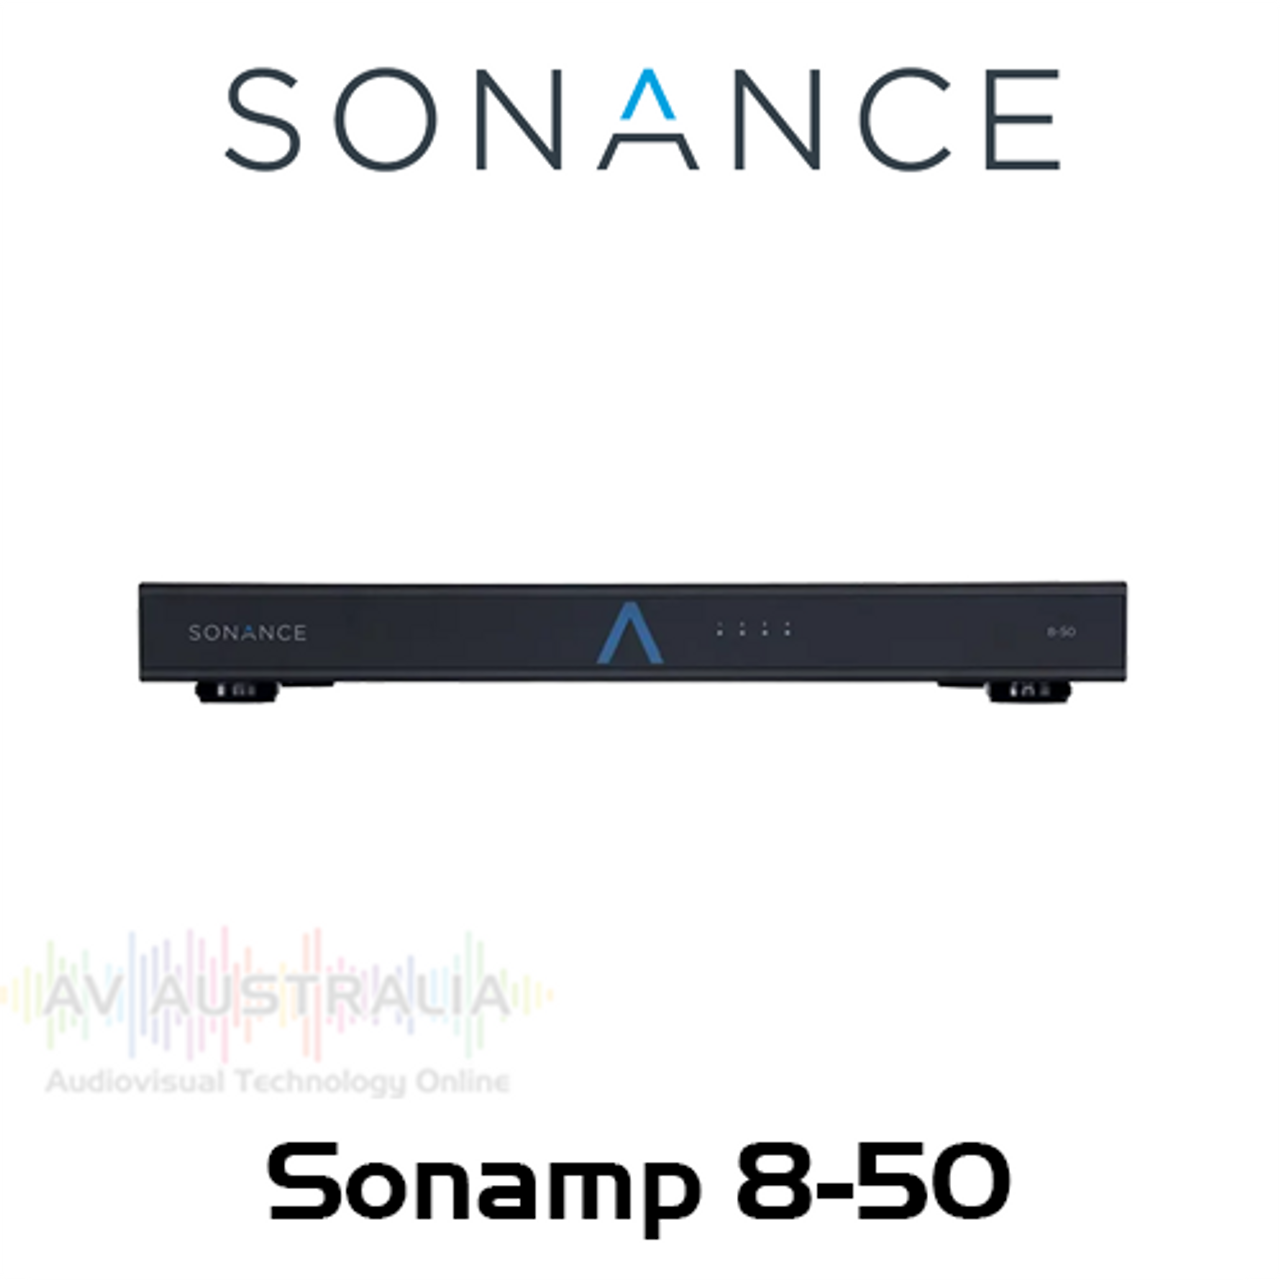 Sonance Sonamp 8-50 8-Channel 50W Digital Amplifier